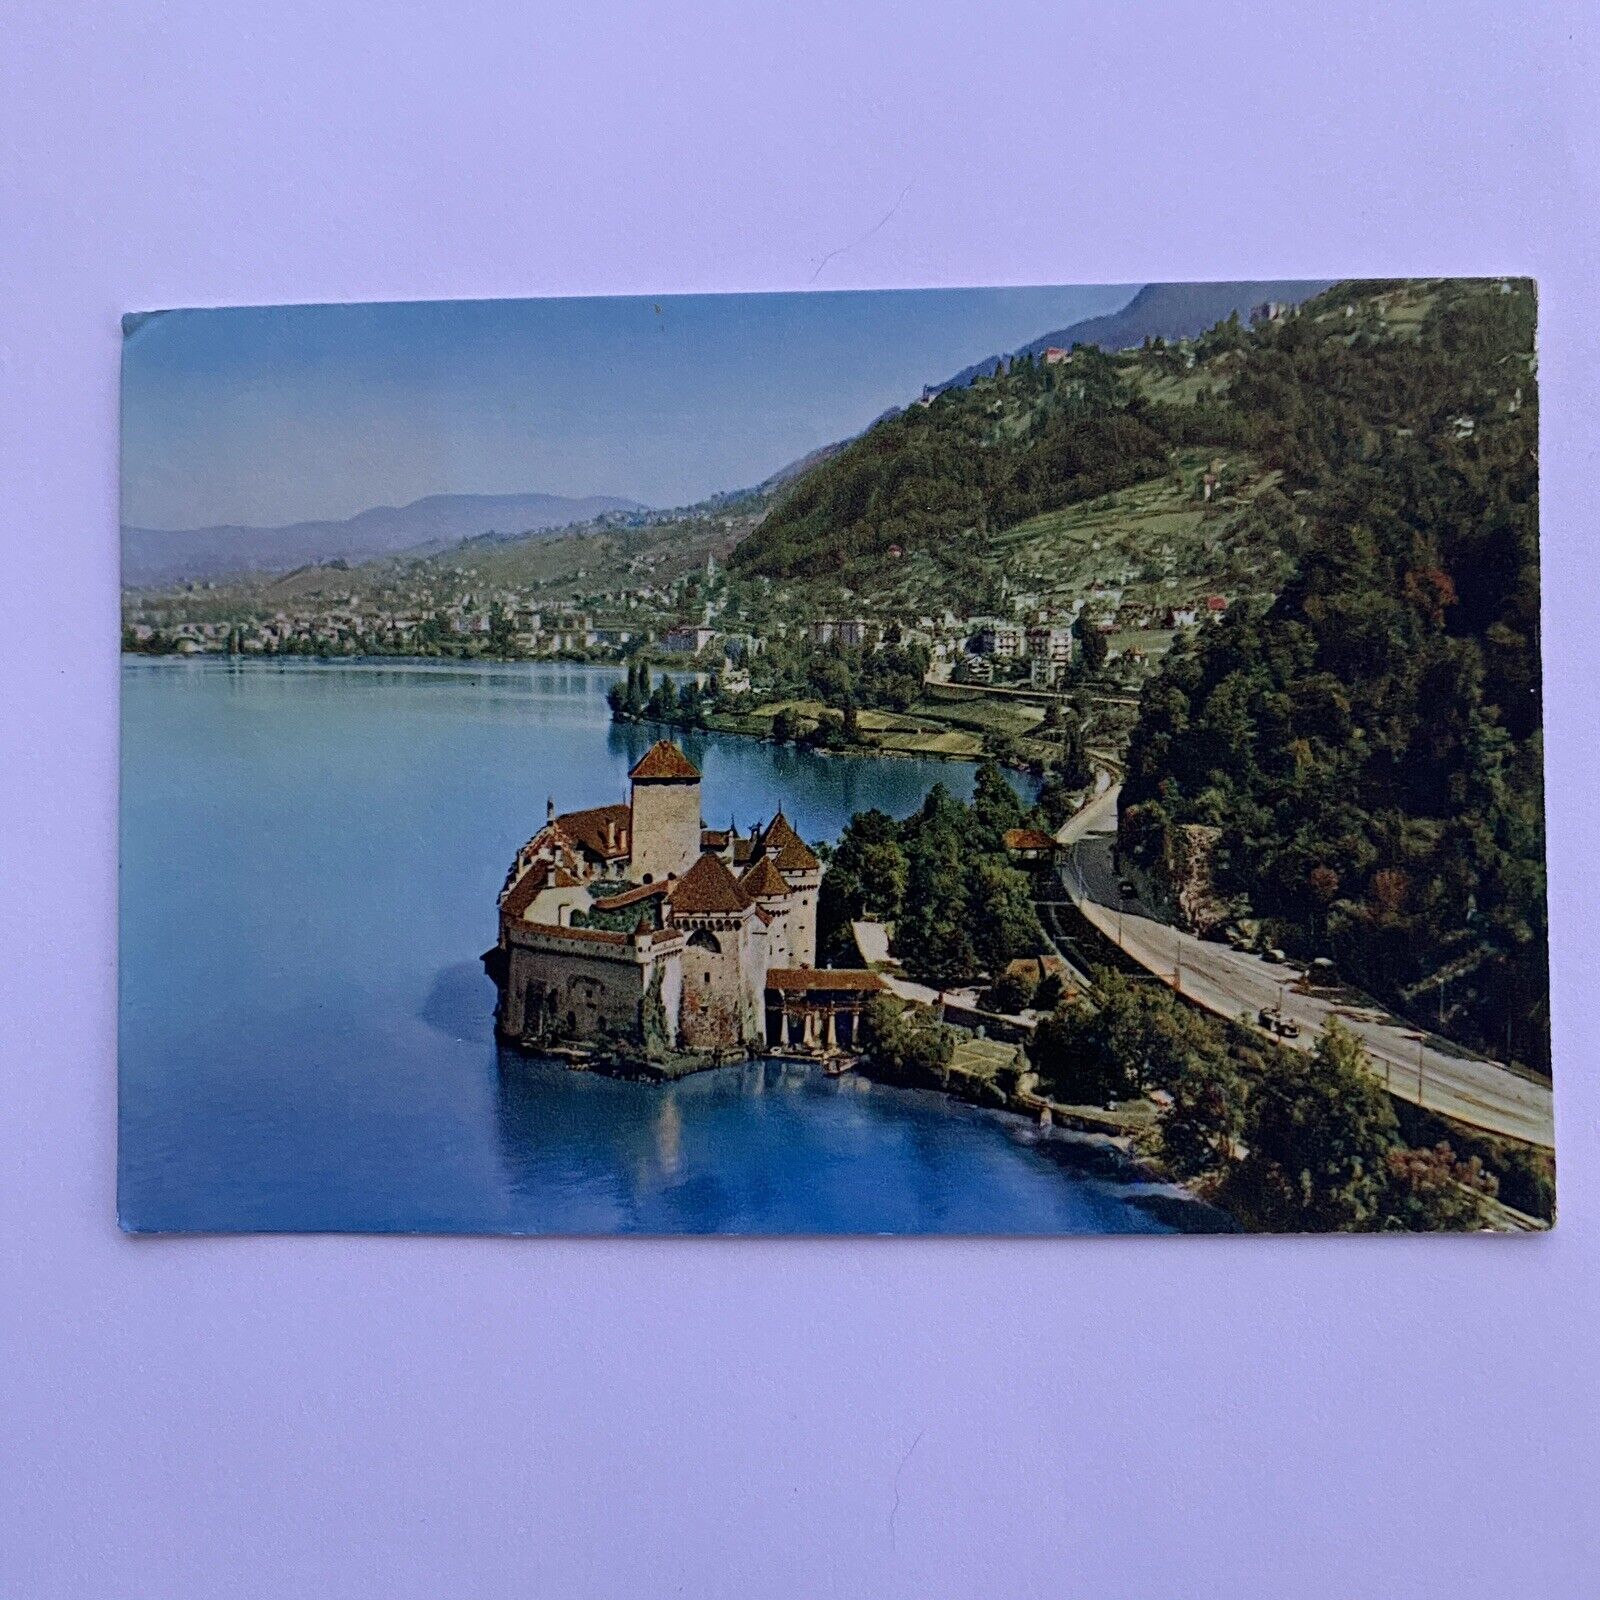 Lac Leman Chateau De Chillon, a Castle in Veytaux, Switzerland Postcard VTG 1955